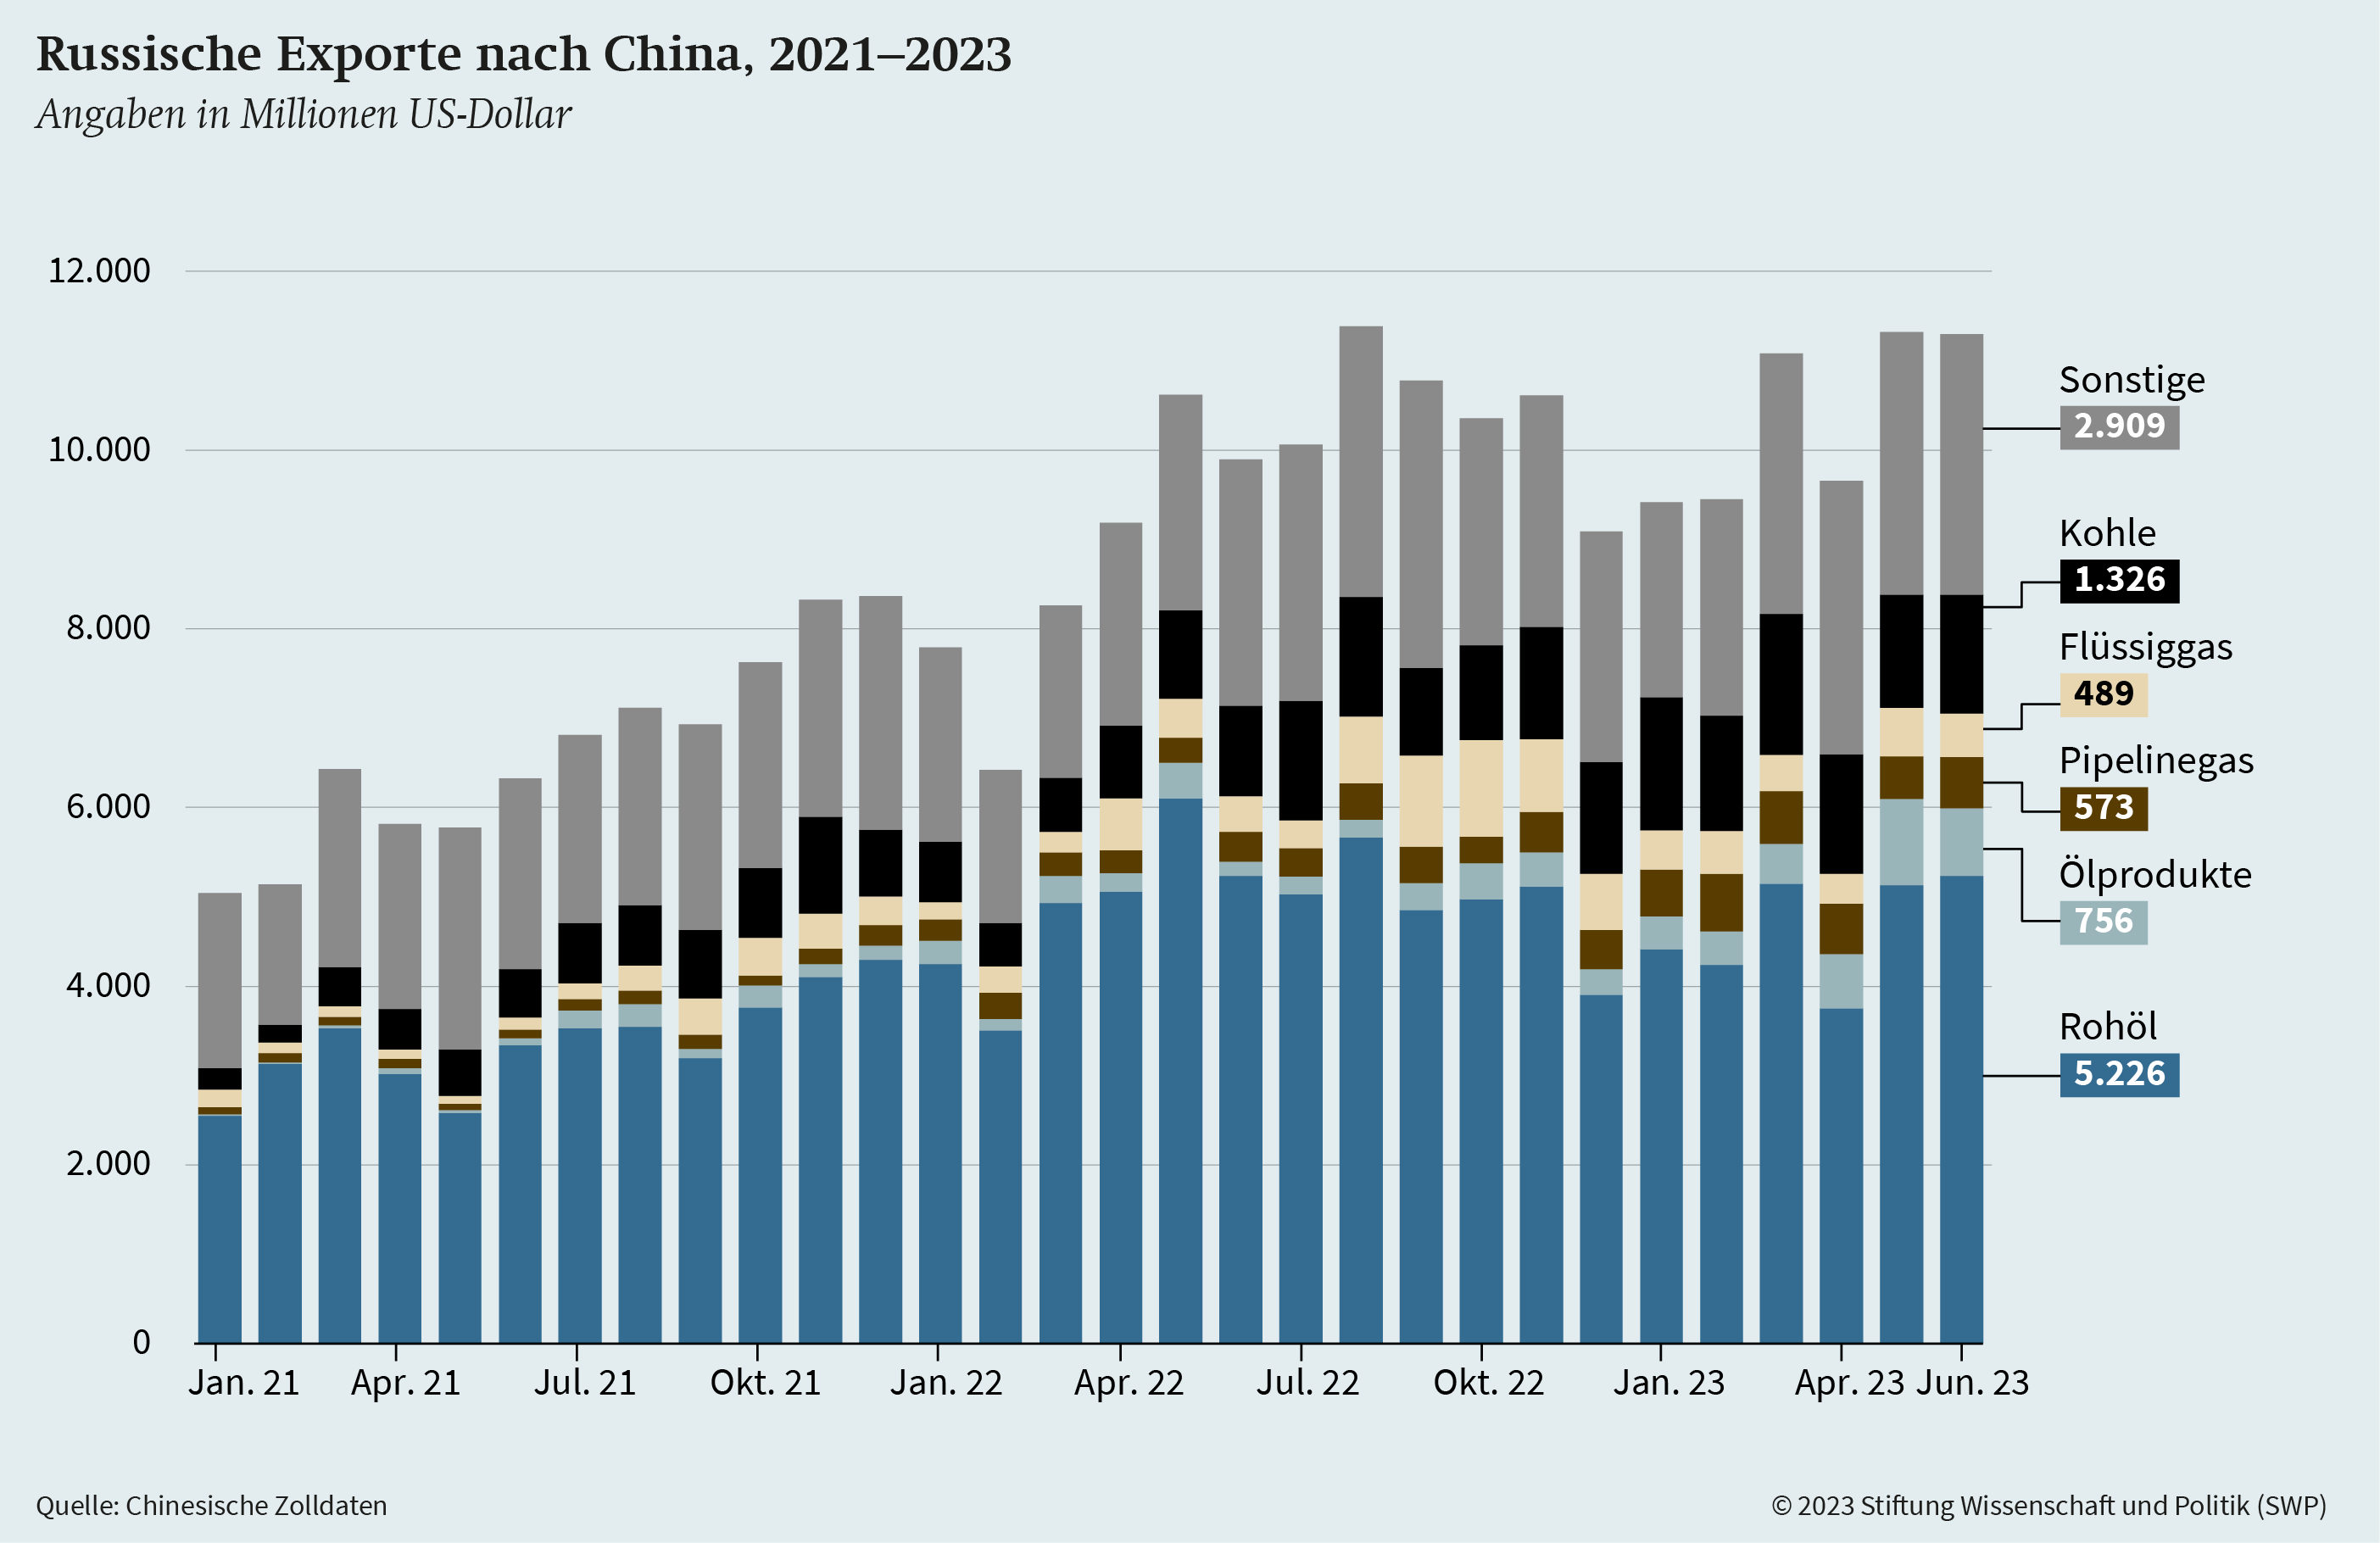 Graphik 5: Russische Exporte nach China, 2021-2023